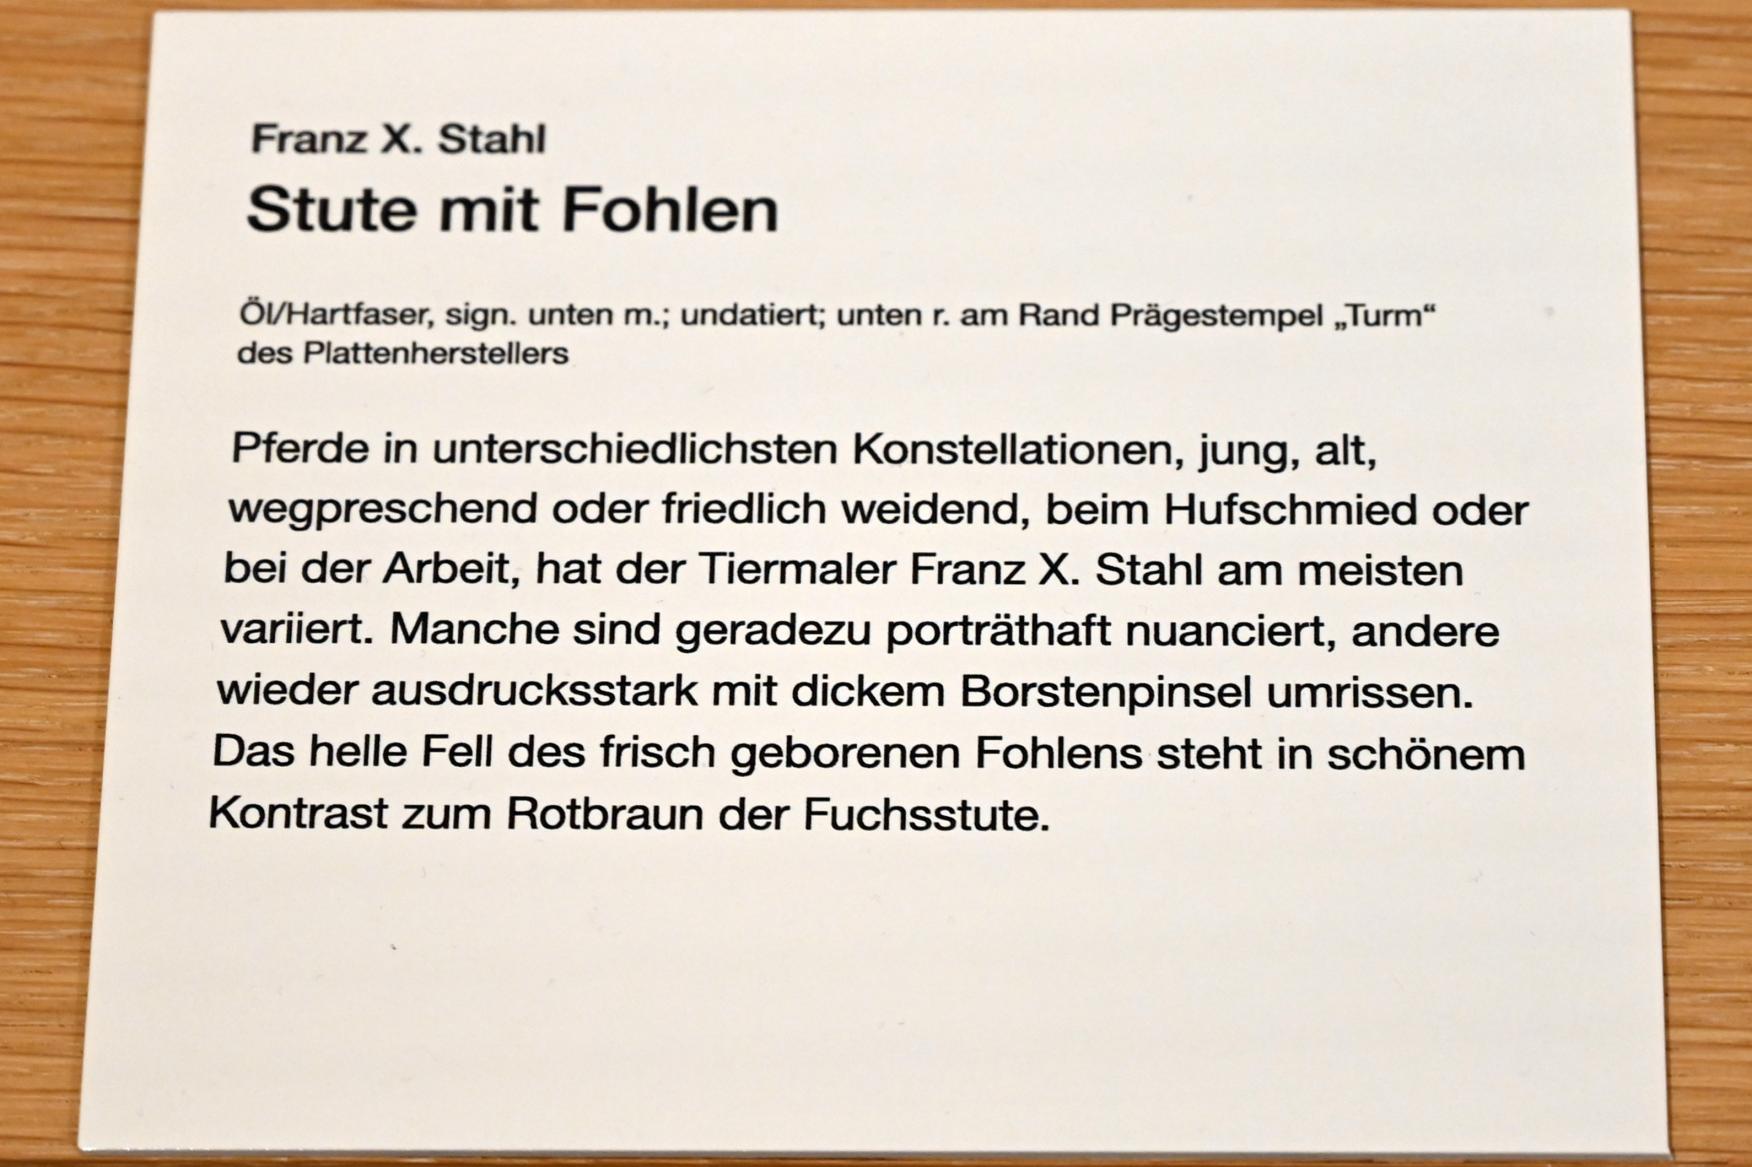 Franz Xaver Stahl (Undatiert), Stute mit Fohlen, Erding, Museum Erding, Erdinger Künstler, Undatiert, Bild 2/2